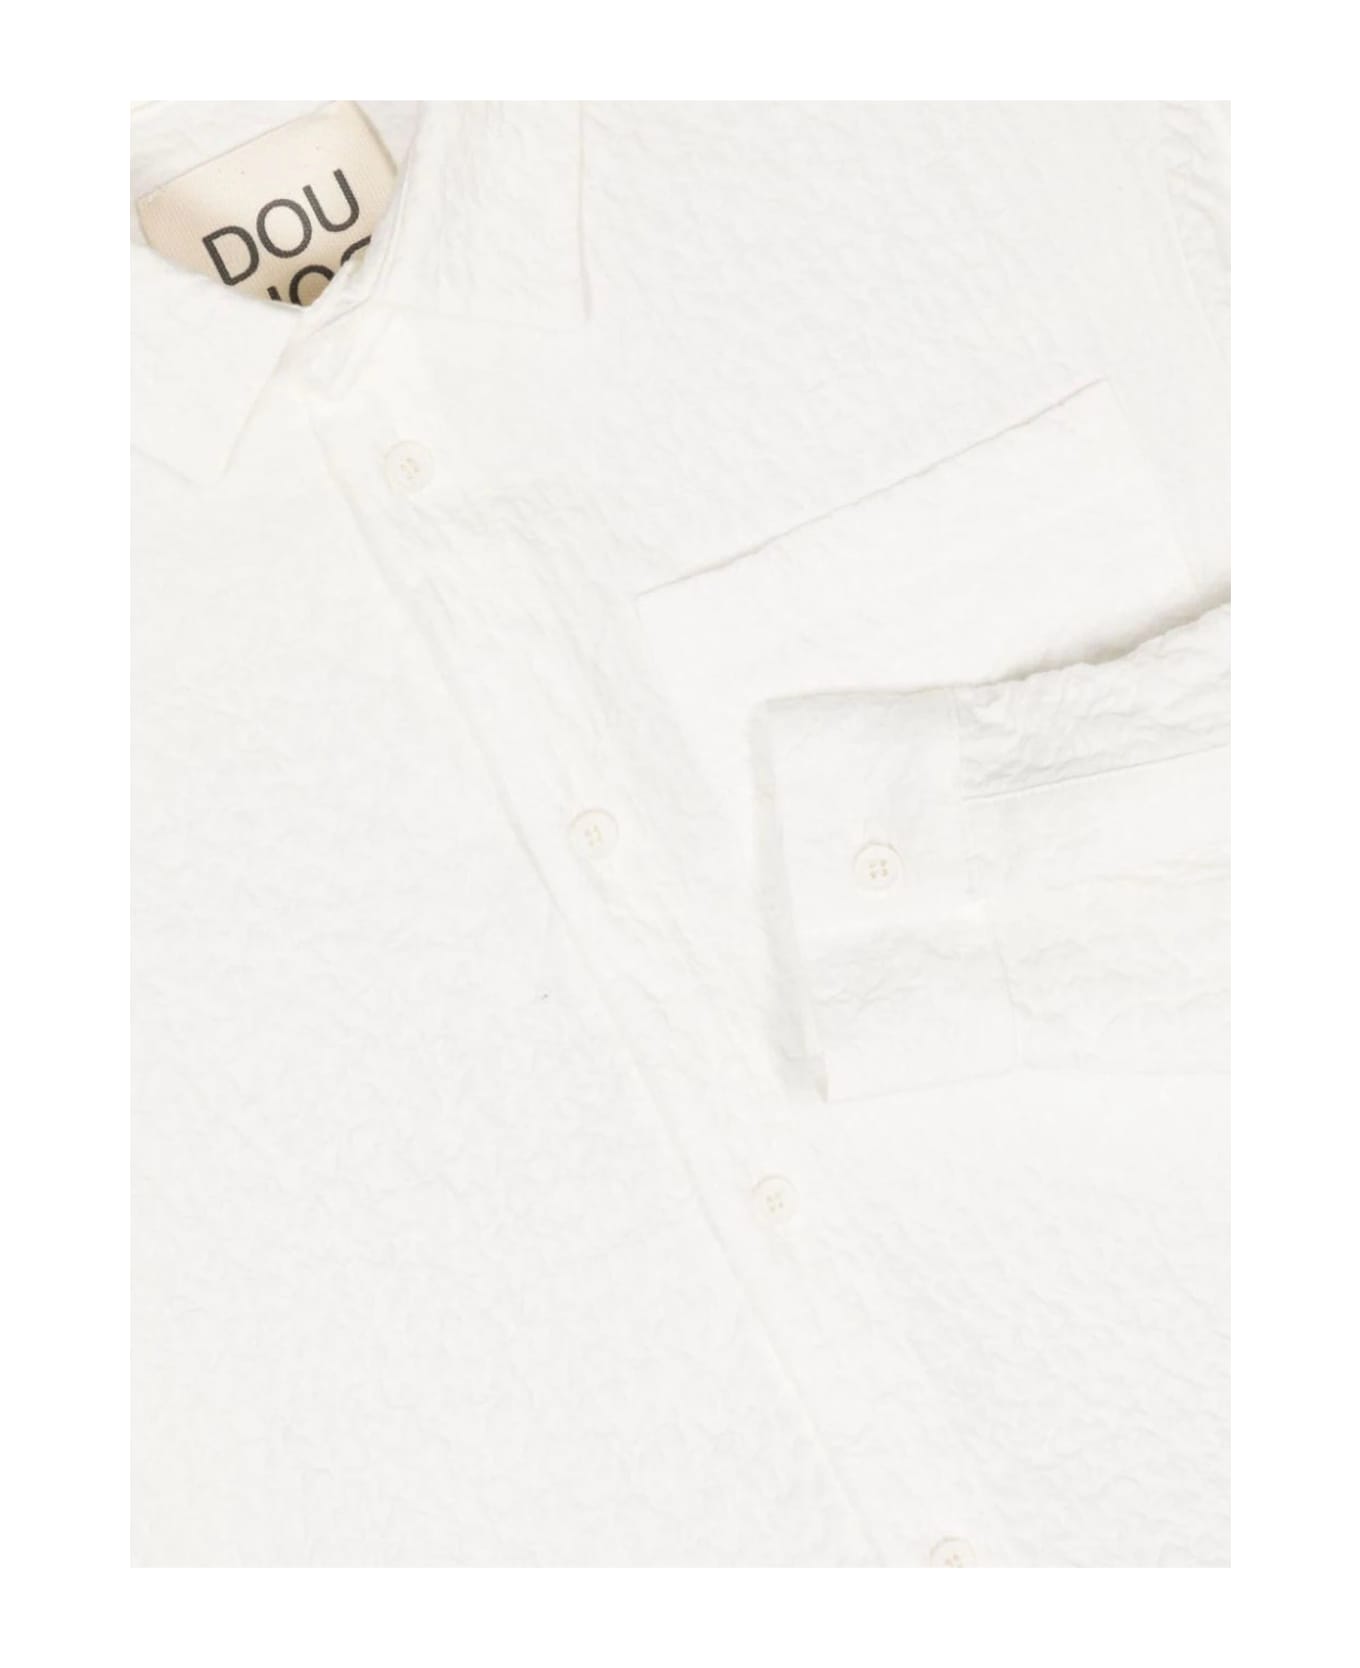 Douuod Dou Dou Shirts White - White シャツ